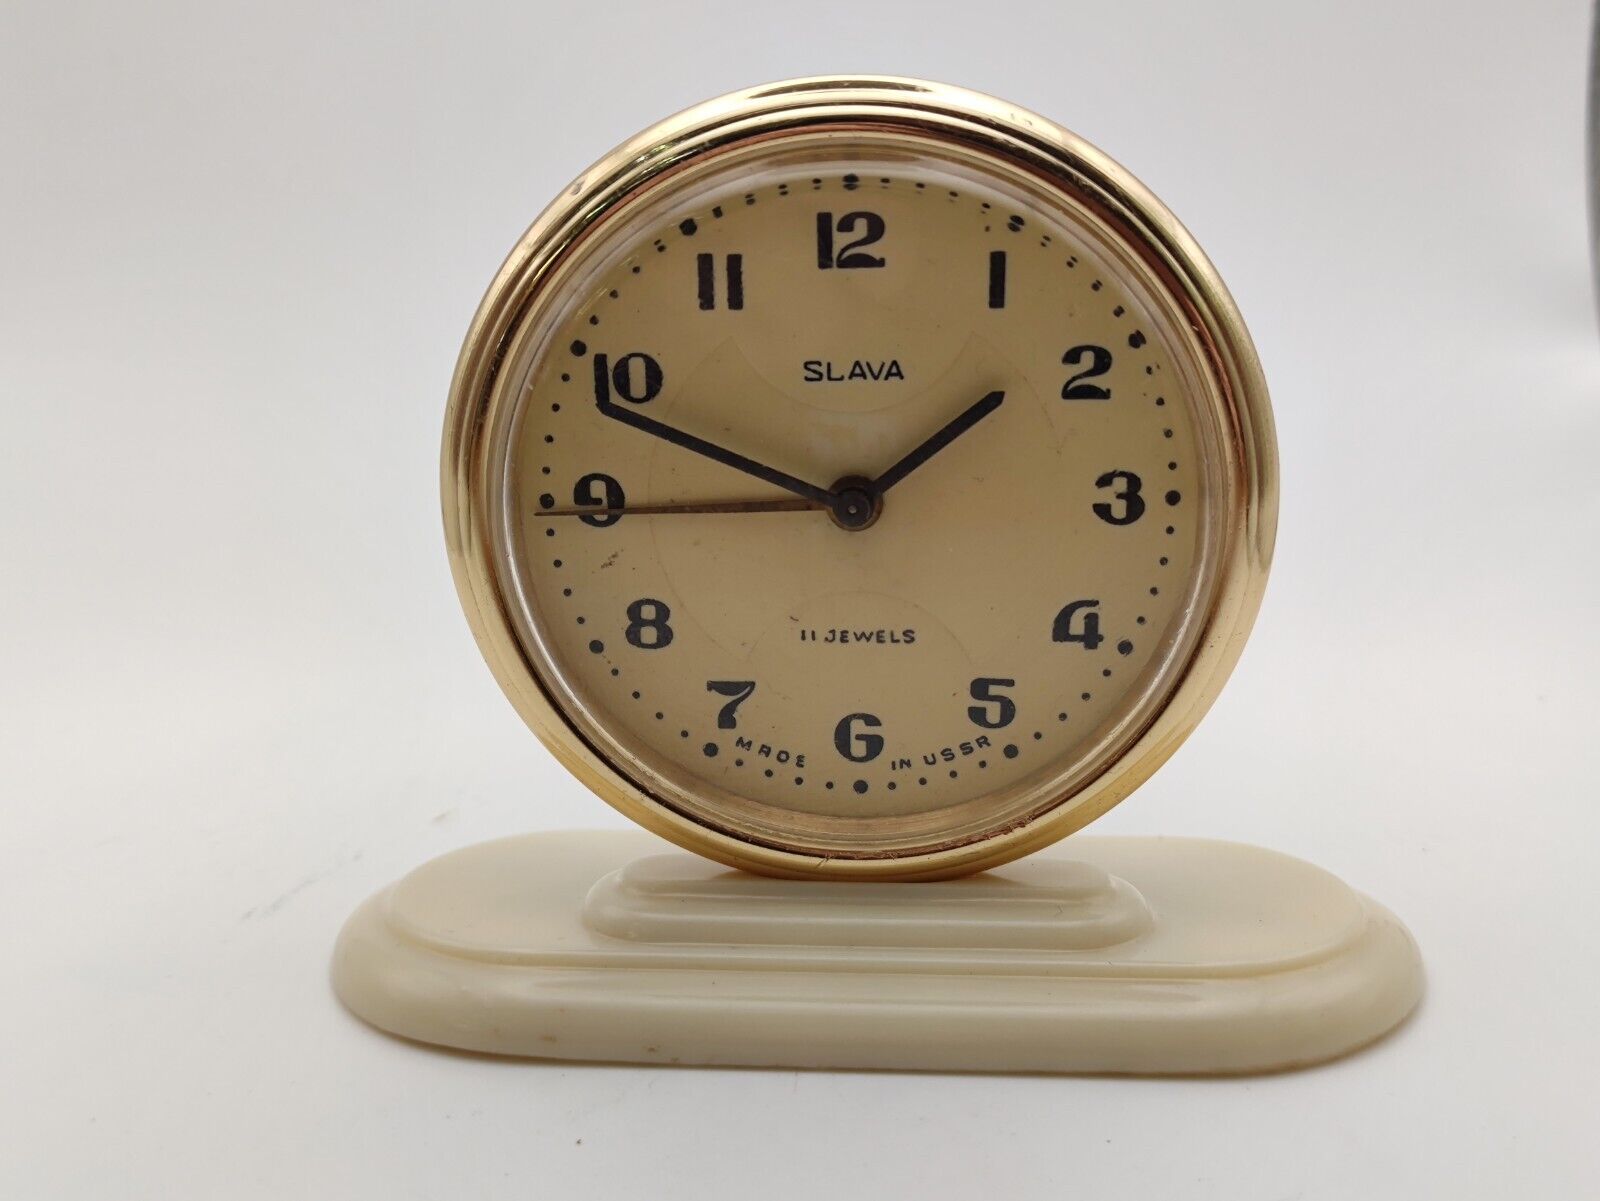 Vintage Mechanical Alarm Clock Slava 11 Jewels Servised USSR Soviet 1960s